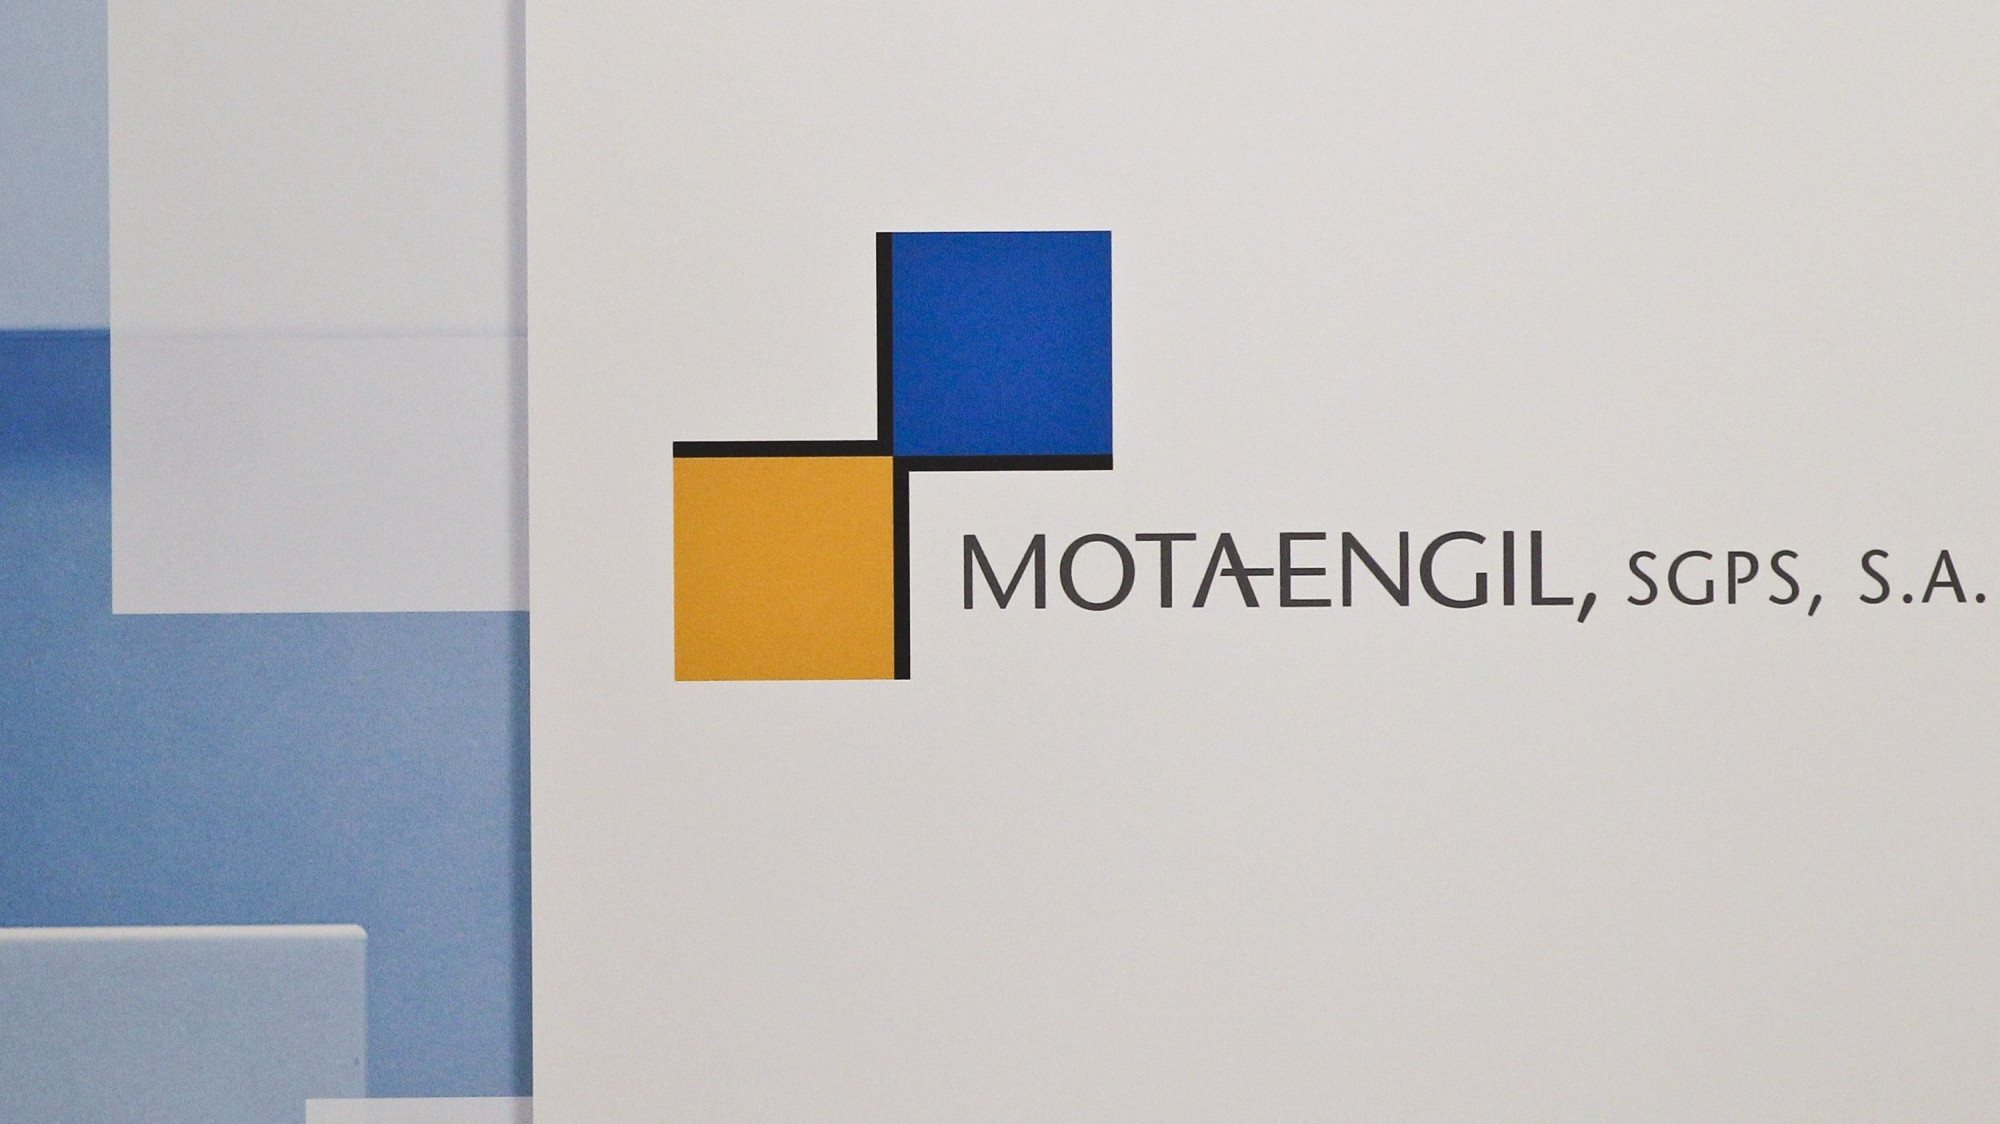 Na sessão de esta quinta-feira da bolsa, as ações da Mota-Engil subiram 2,46% para 1,50 euros.